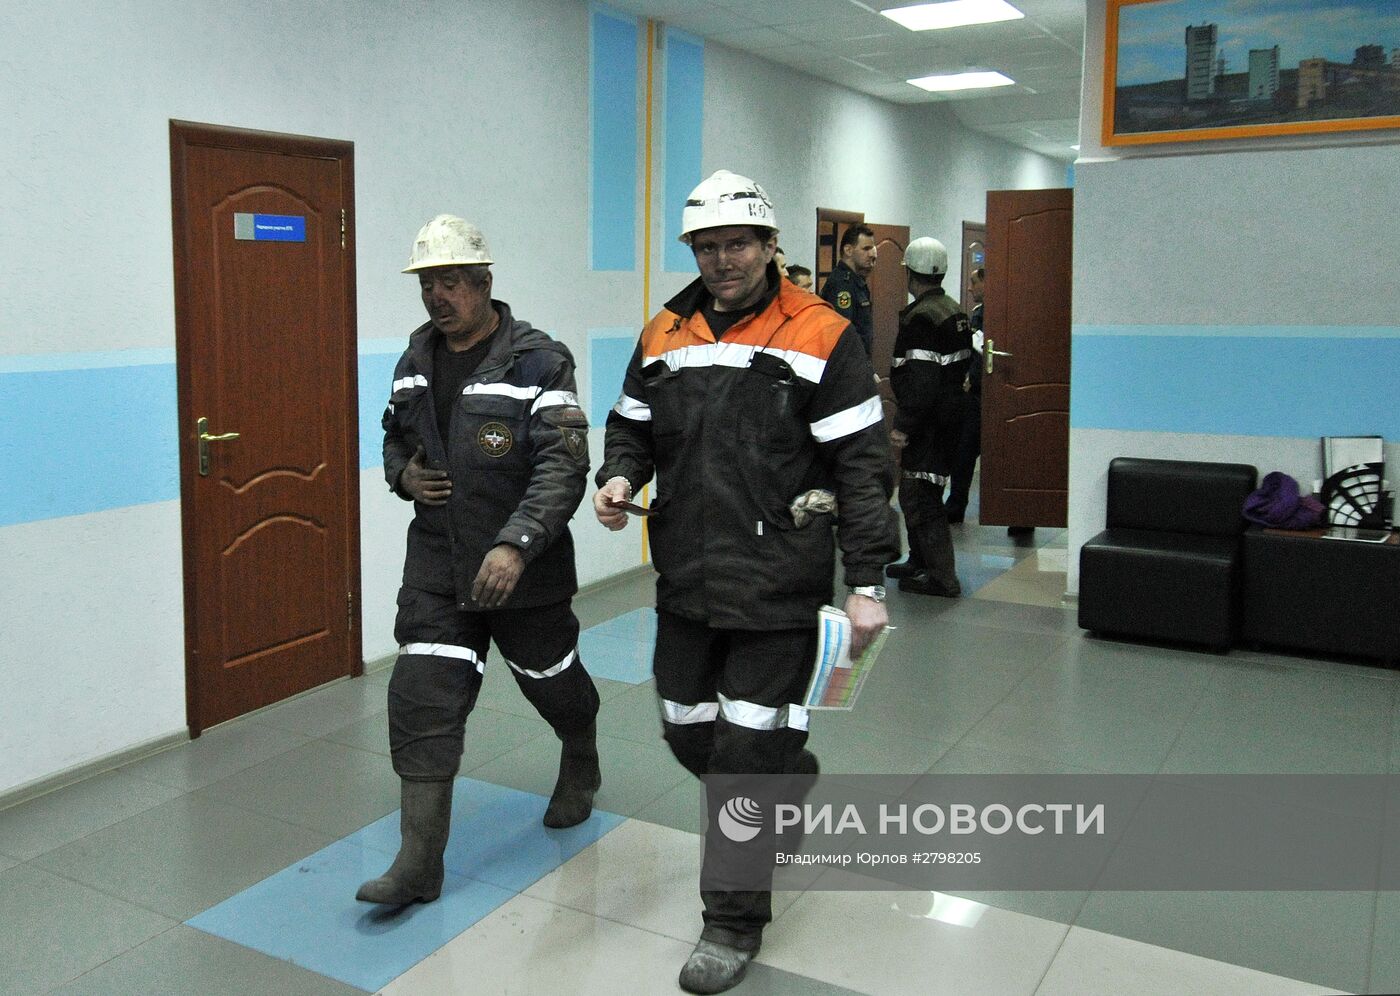 Глава МЧС В. Пучков провел выездное заседание рабочей группы по предупреждению и ликвидации ЧС